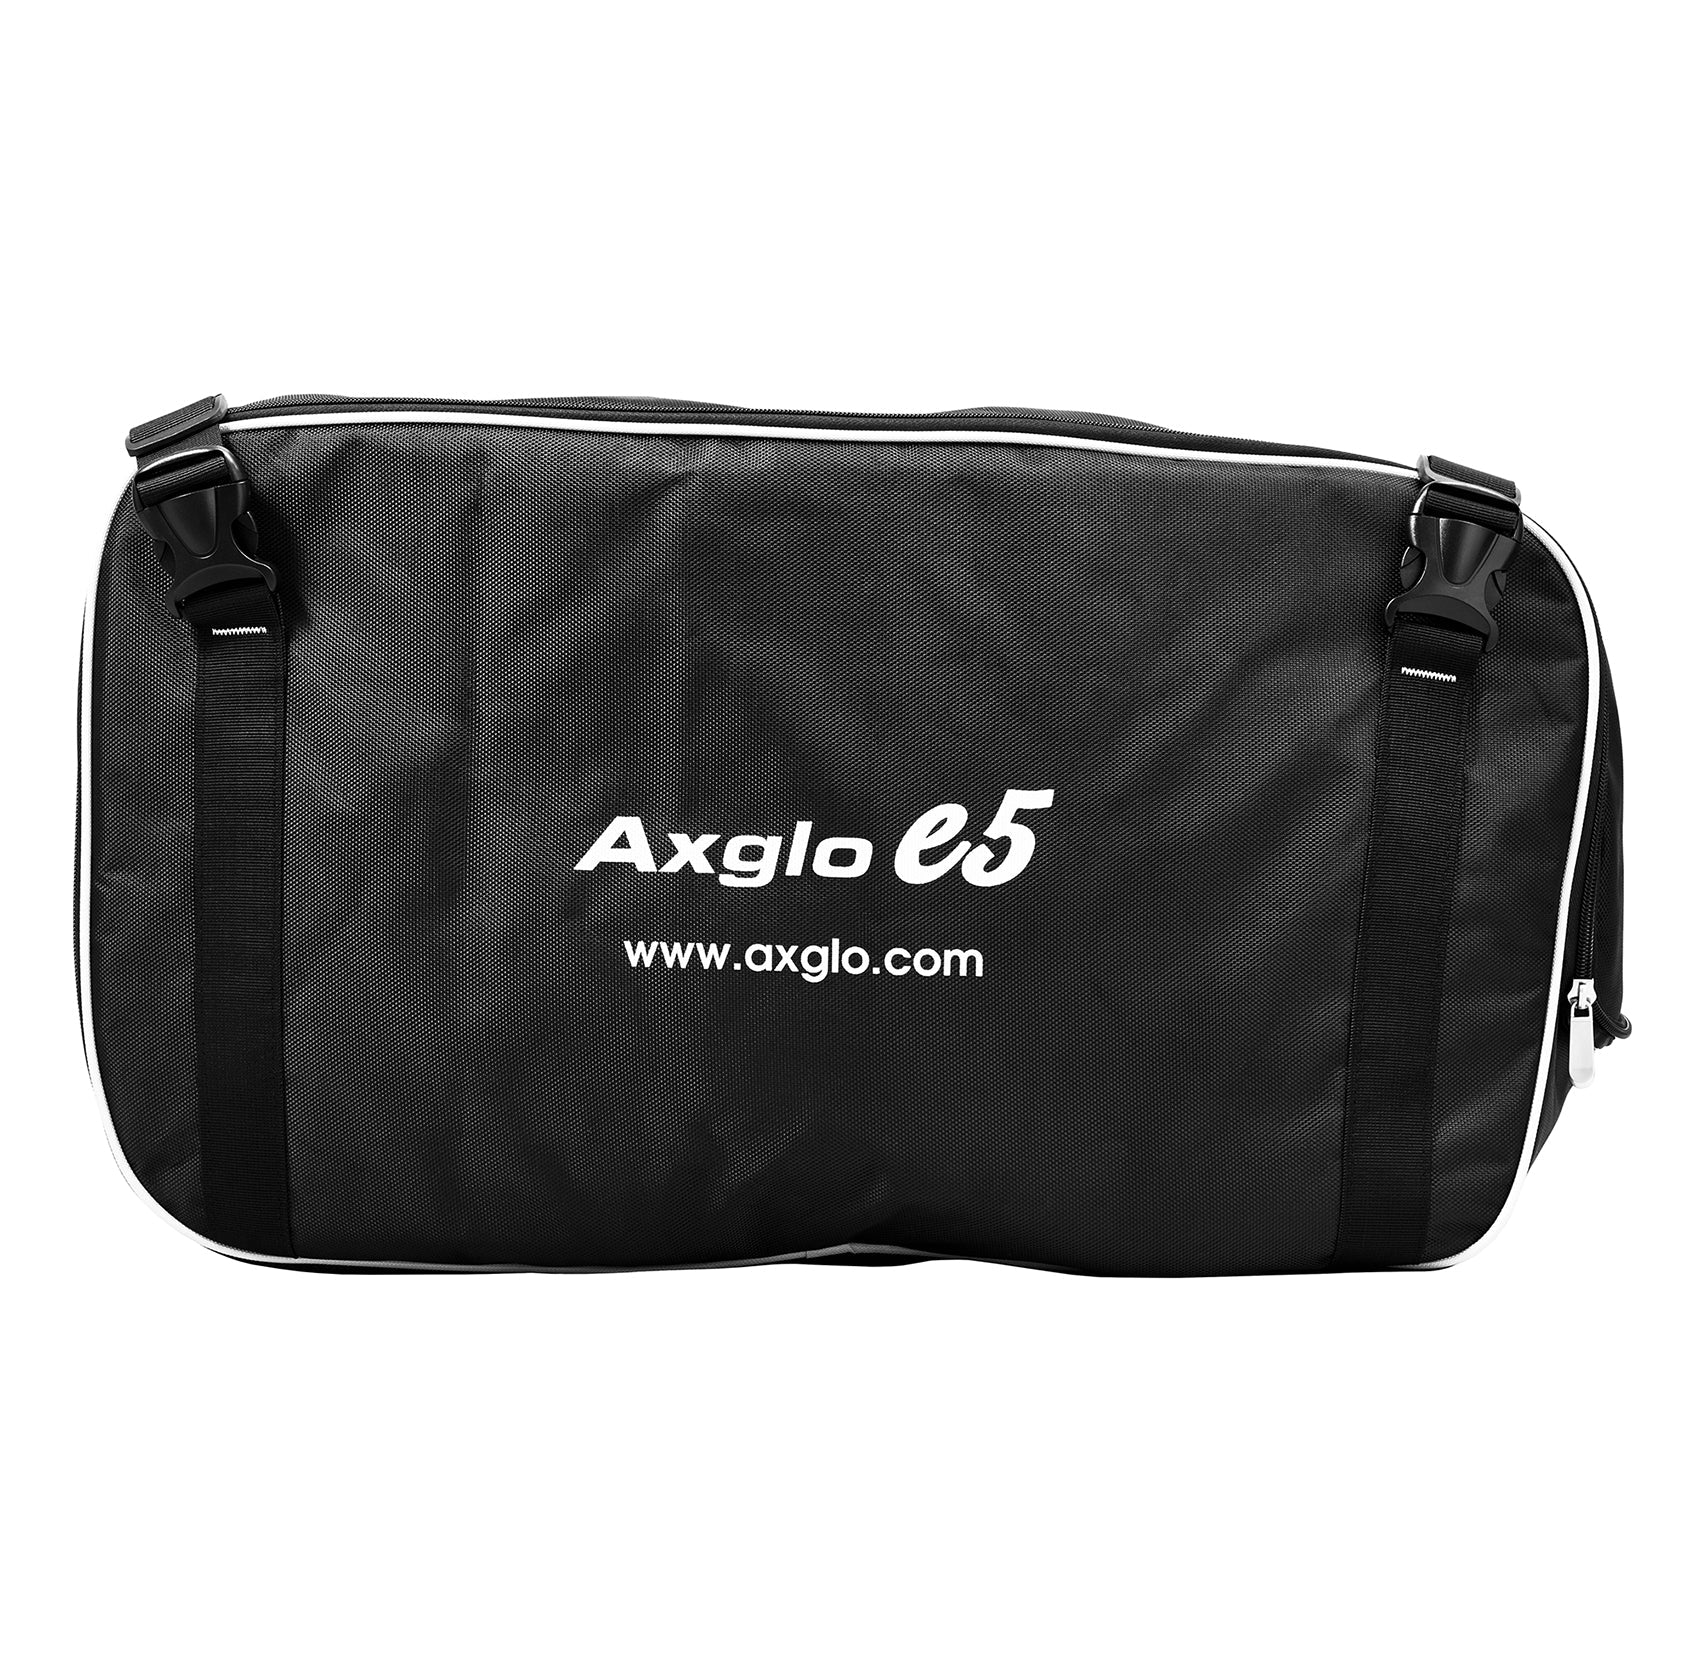 Axglo e5 Storage Bag - Big Horn Golfer